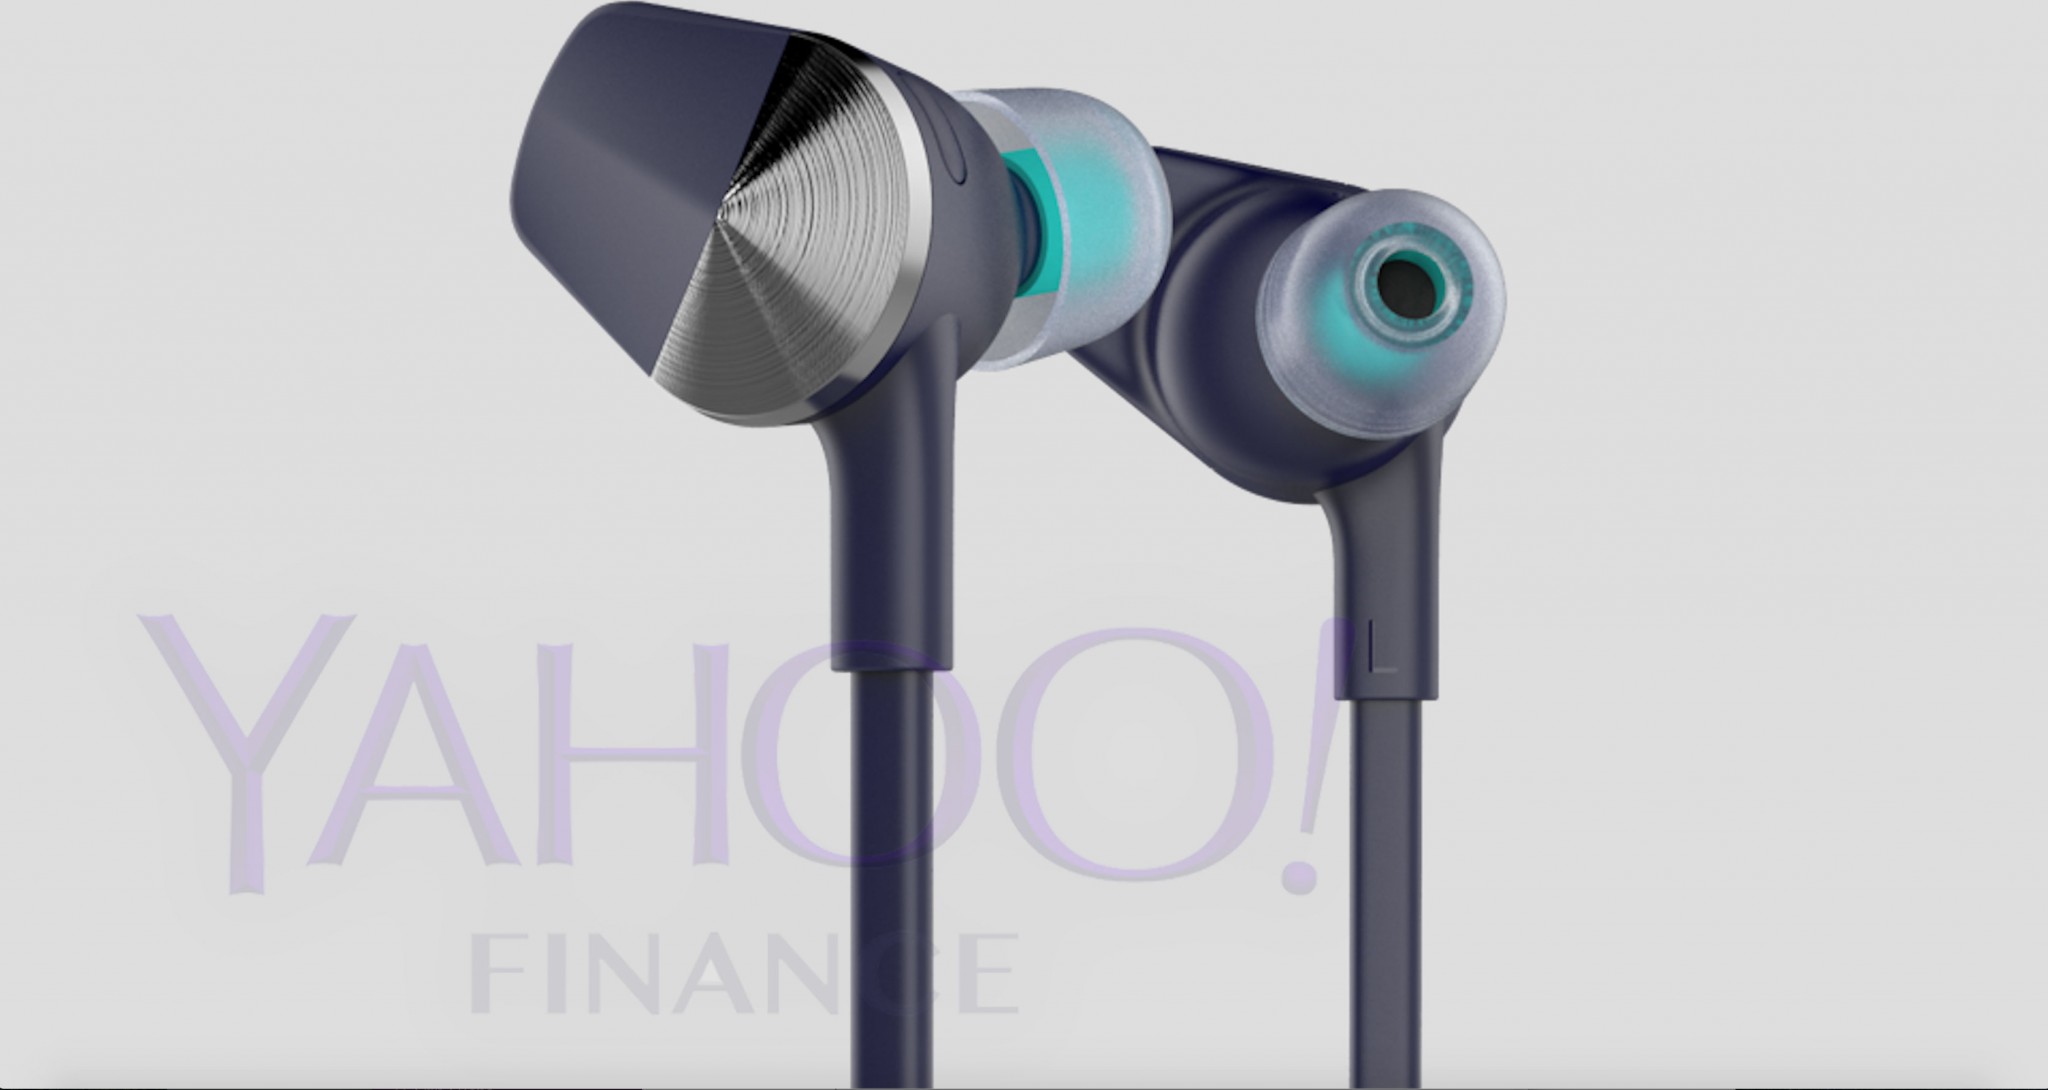 Fitbit Wireless Earbuds Yahoo Finance Leak